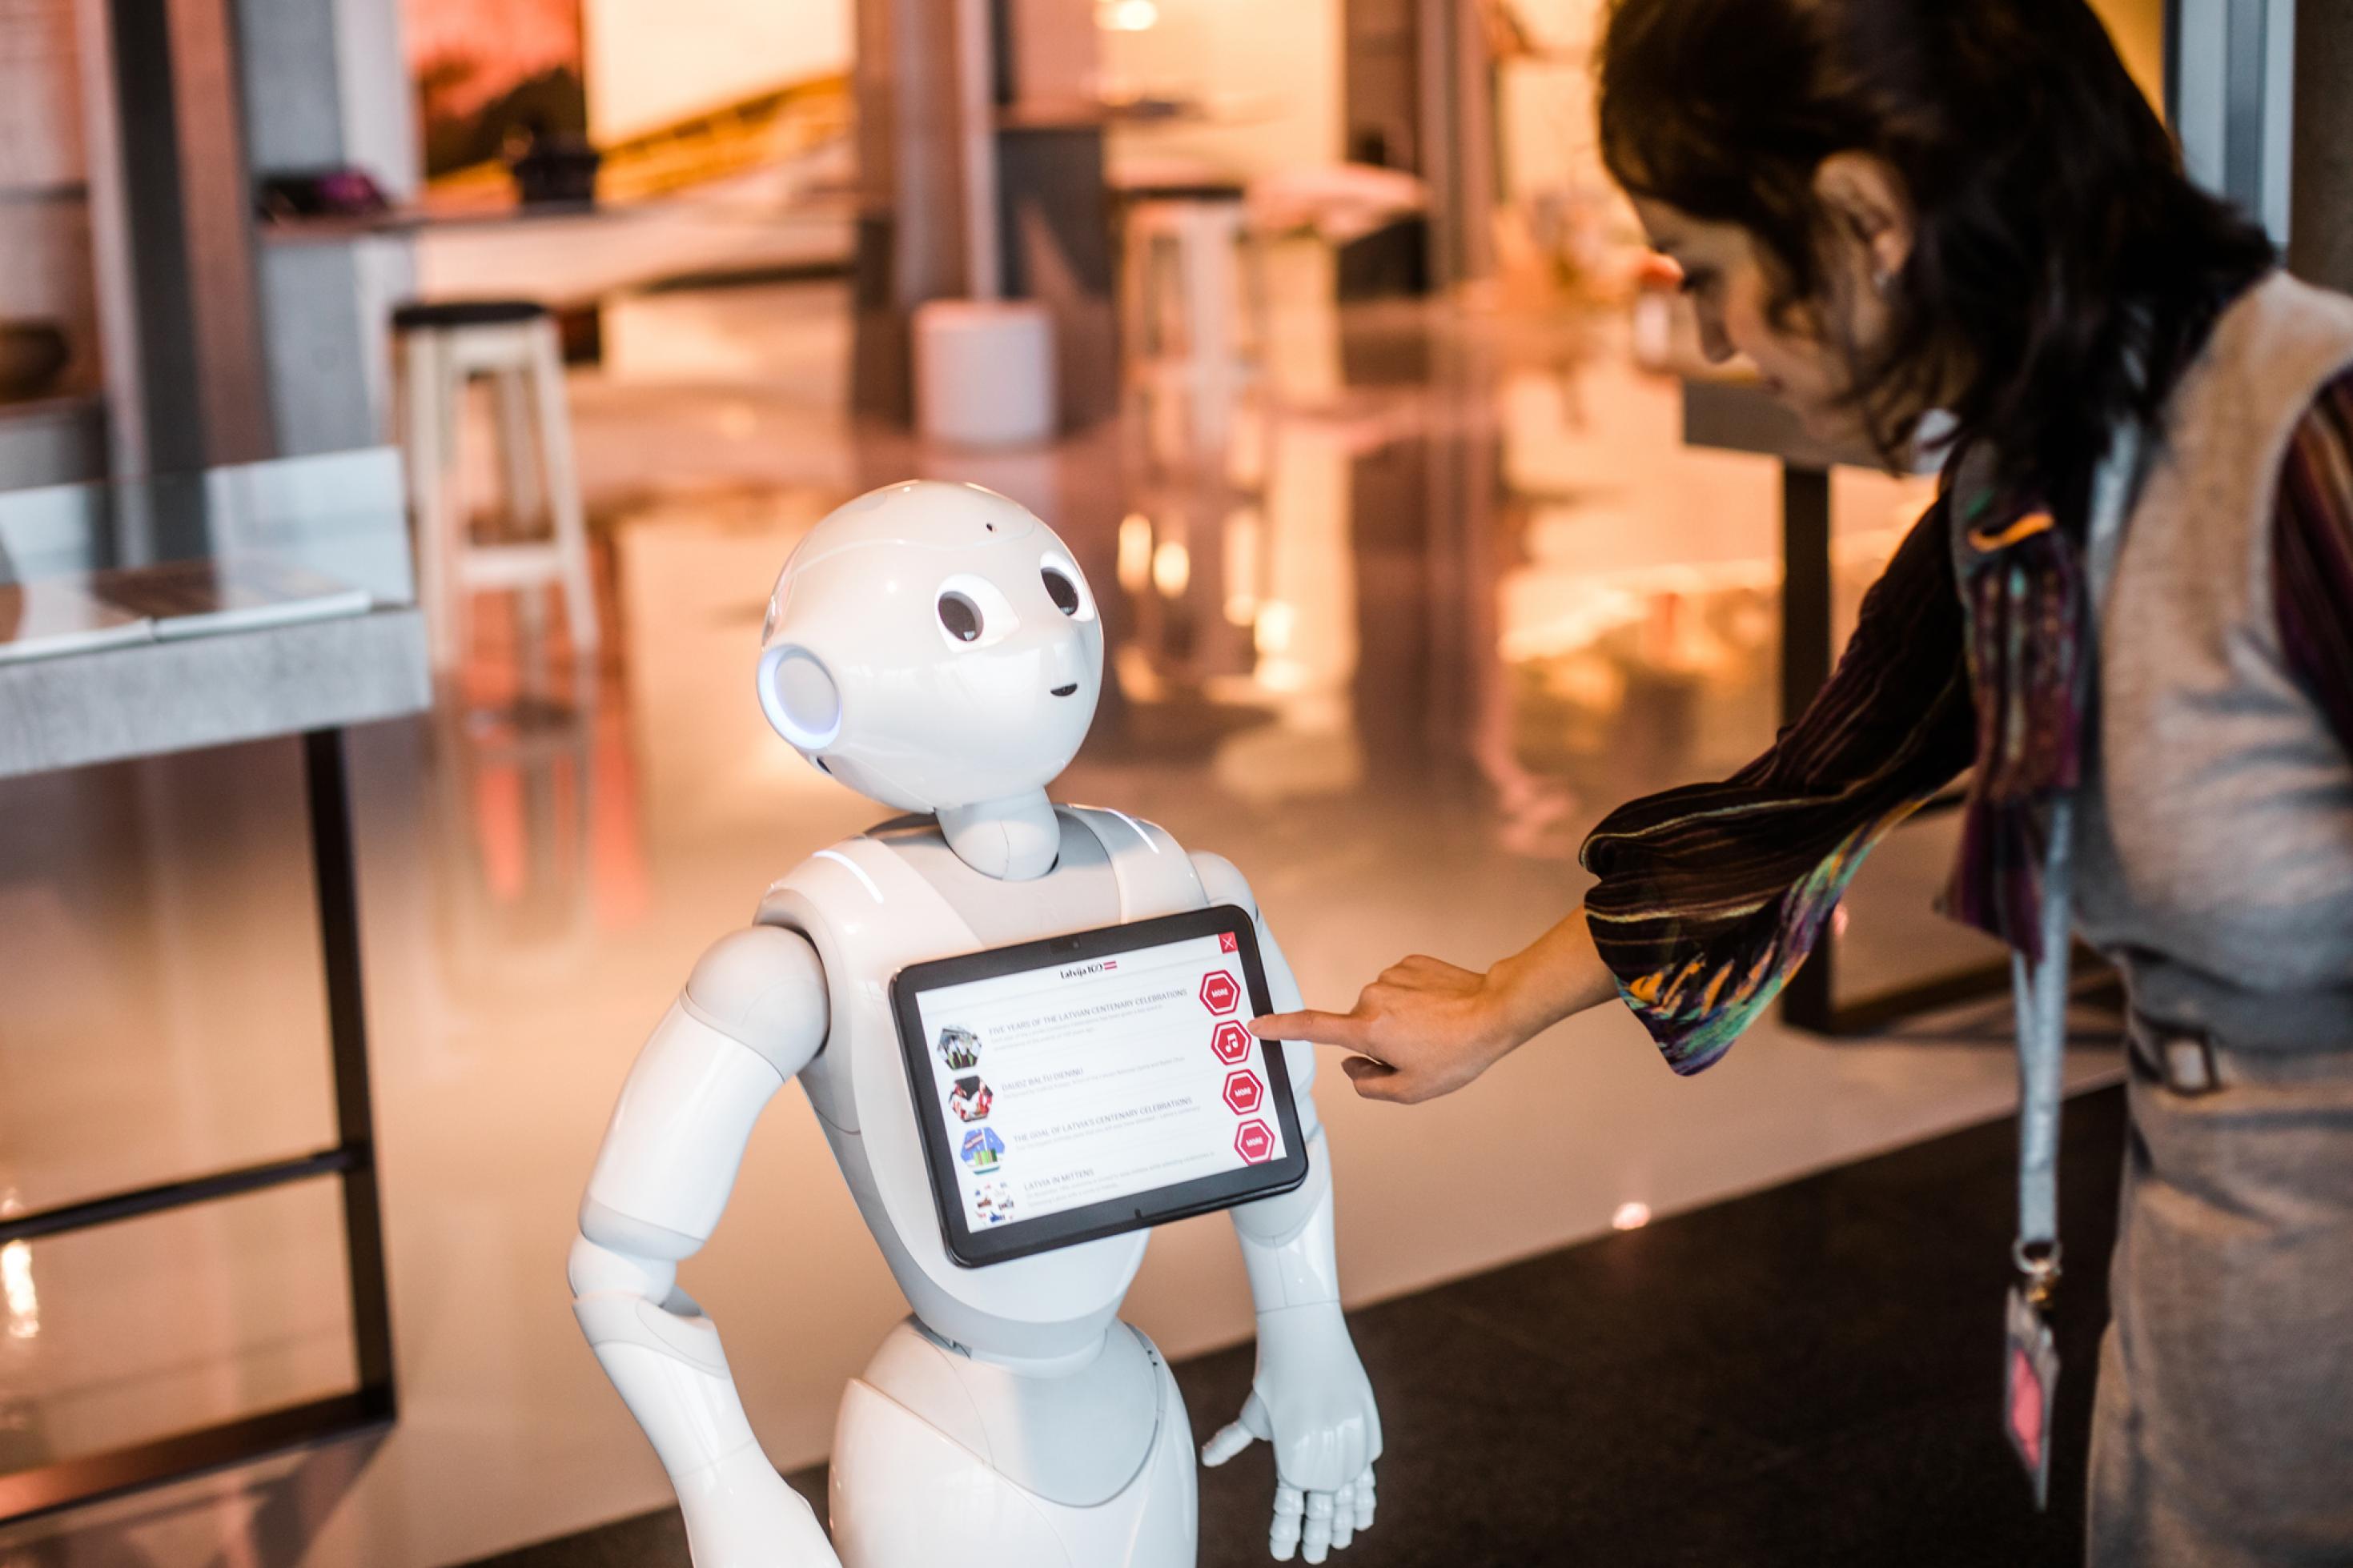 Ein Passagier erkundigt sich bei Roboter Pepper am Flughafen von Riga. Dank KI können Maschinen die Rolle eines sozialen Gegenübers übernehmen.